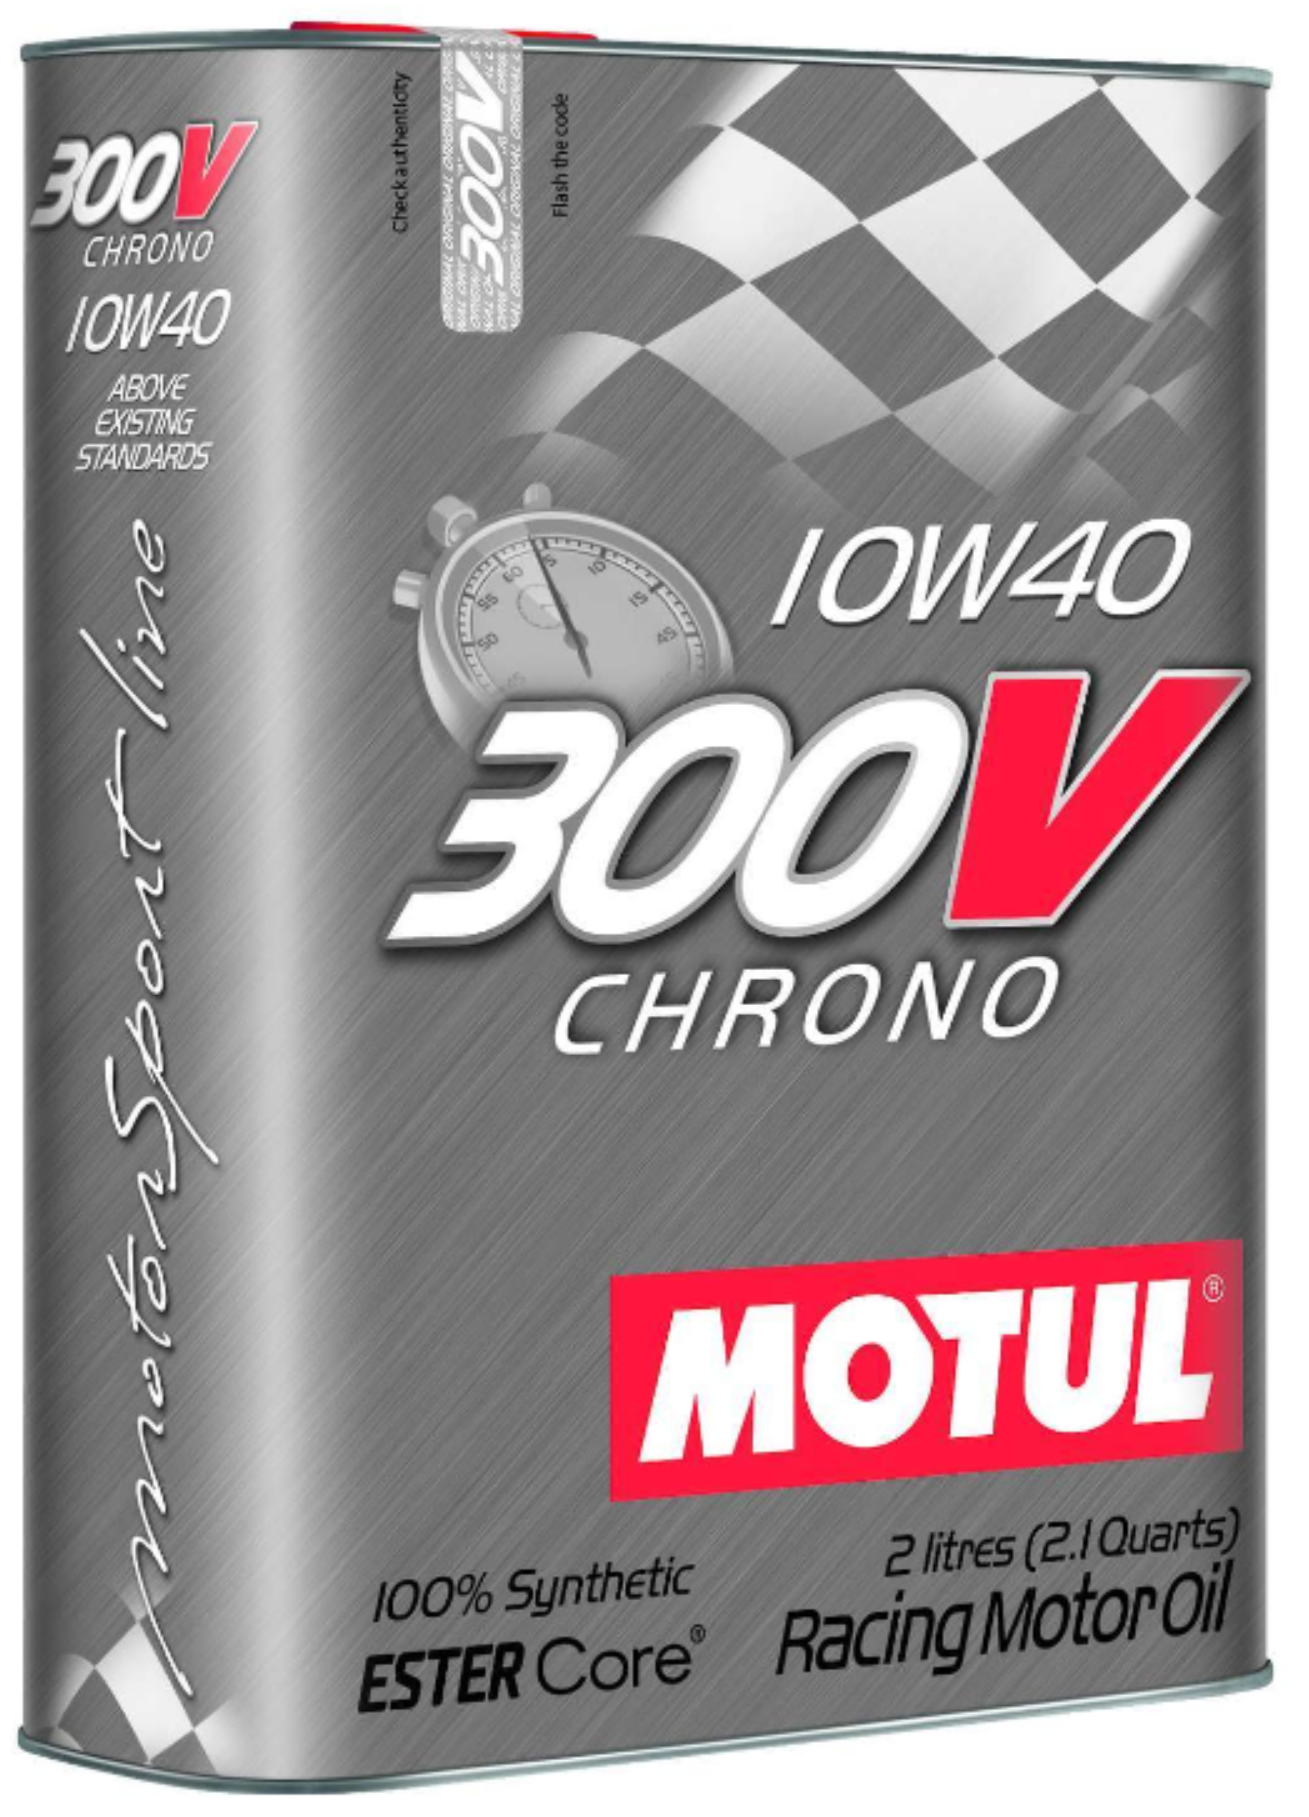 Motul 300V Chrono 10W40 Synthetic Racing Oil - 2L